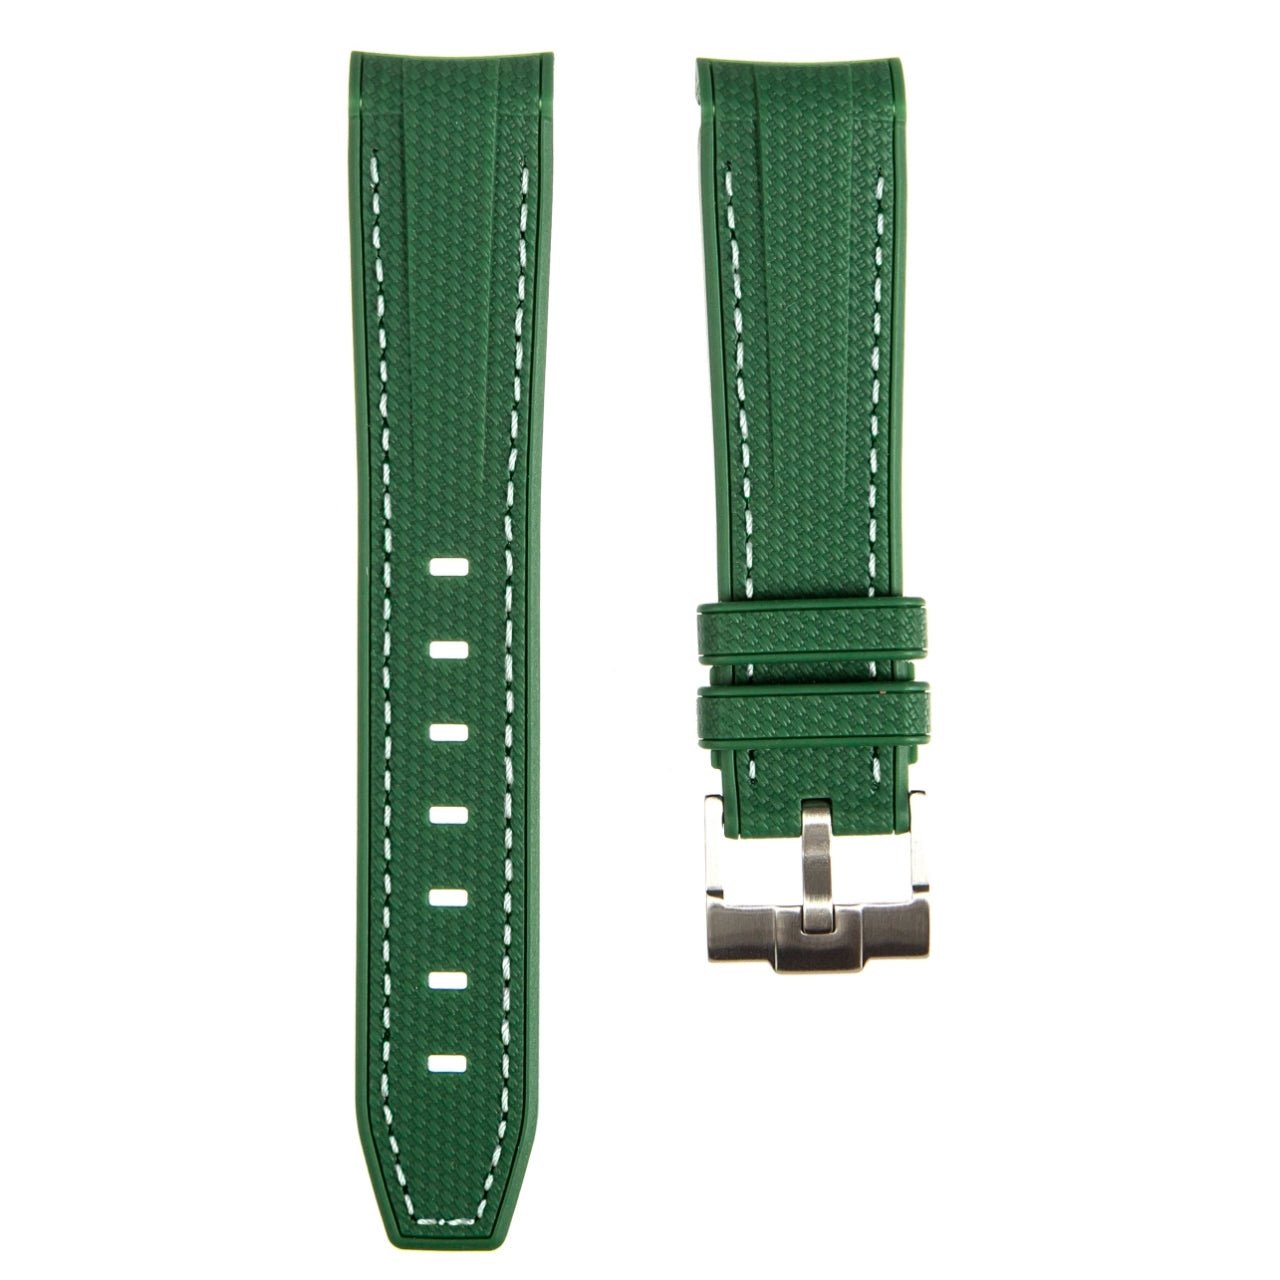 Textured Curved End Premium Silicone Strap - Dark Green With White Stitch (2405) -StrapSeeker